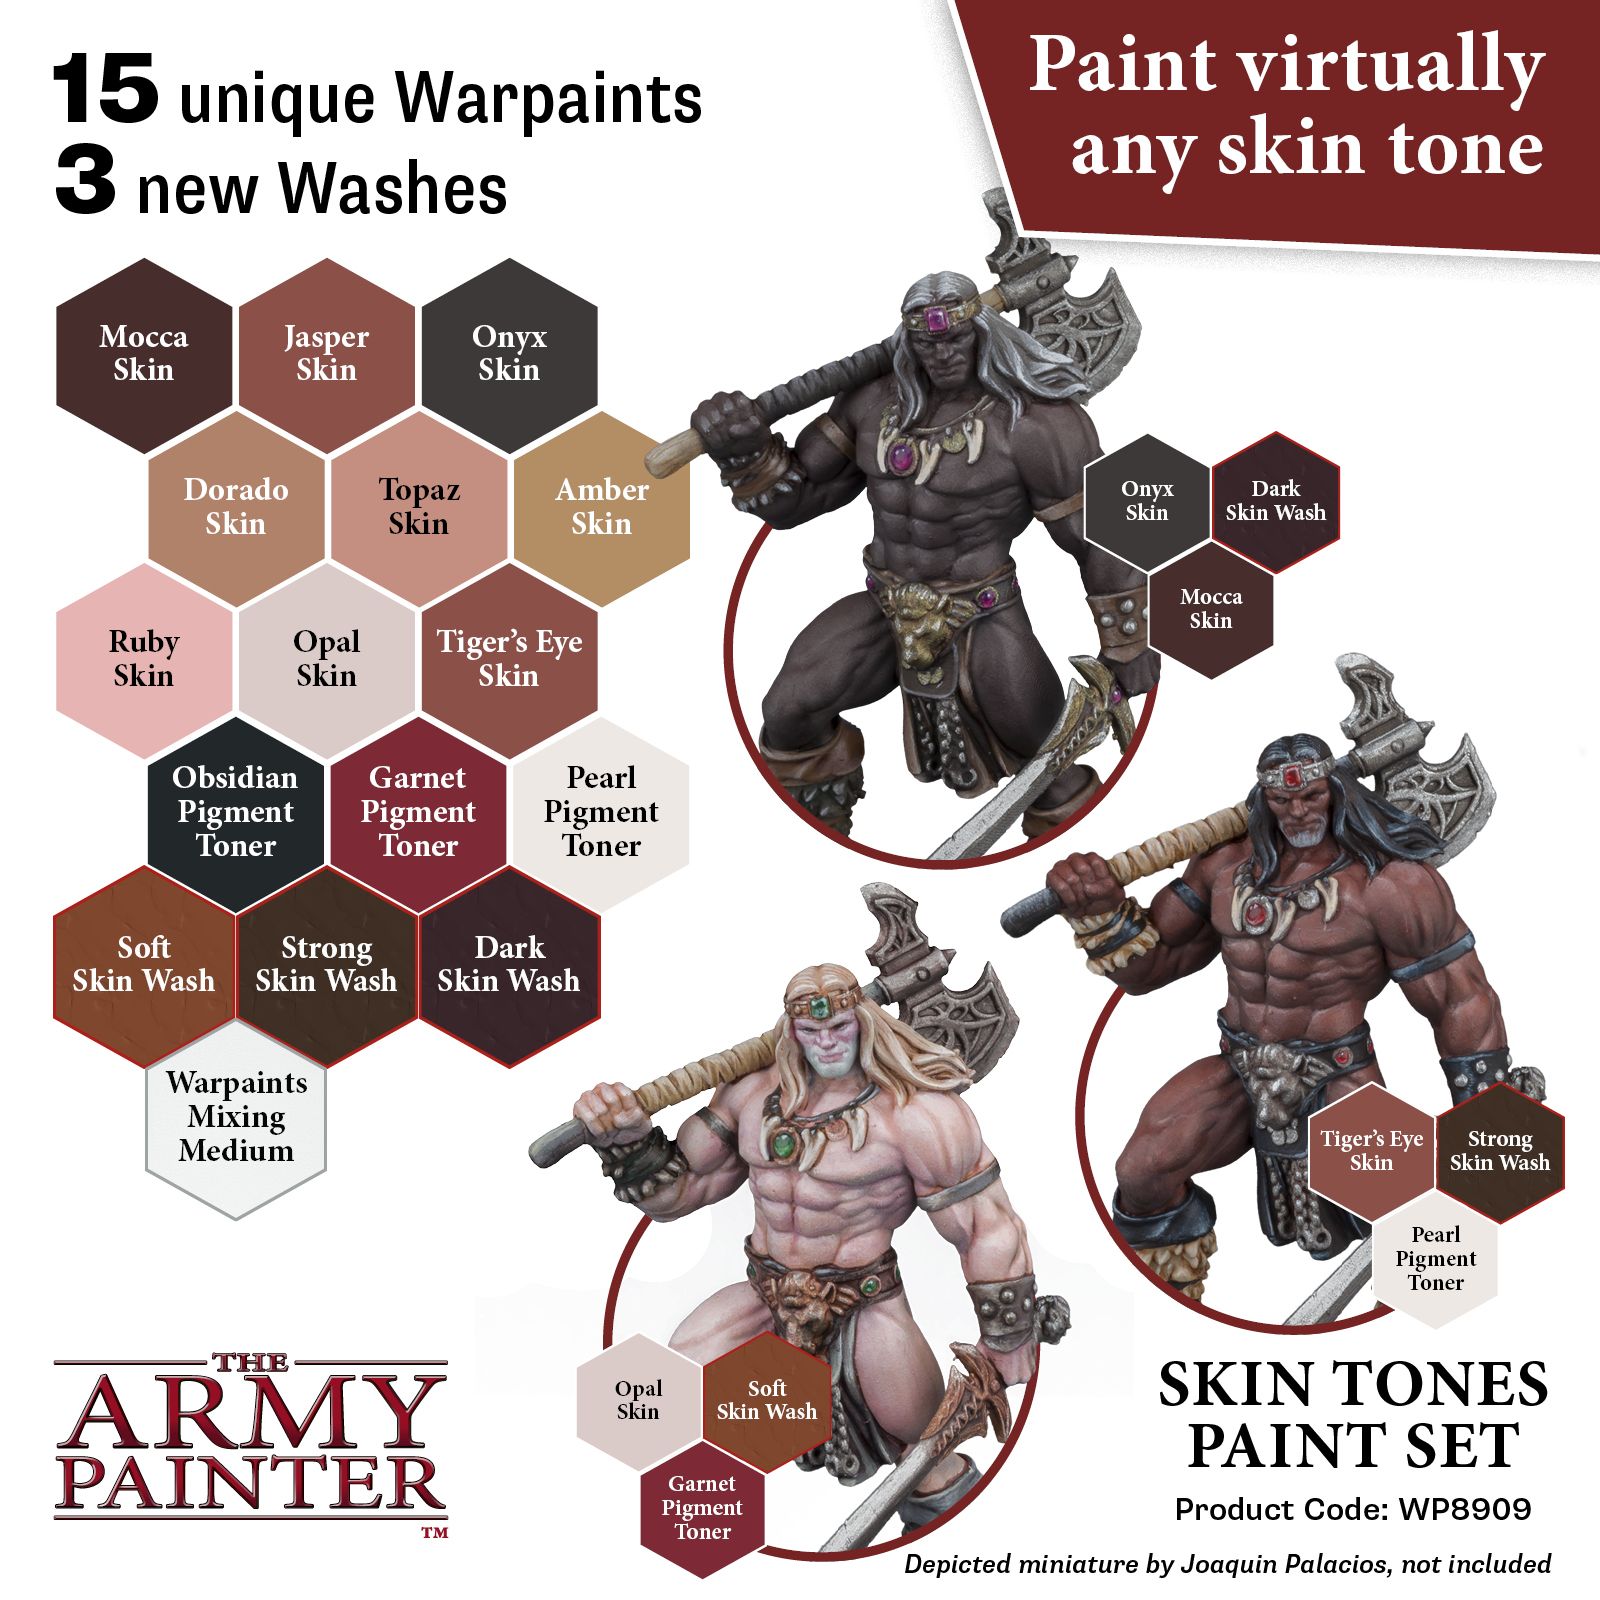 Army Painter Warpaints Skin Tones Paint Set